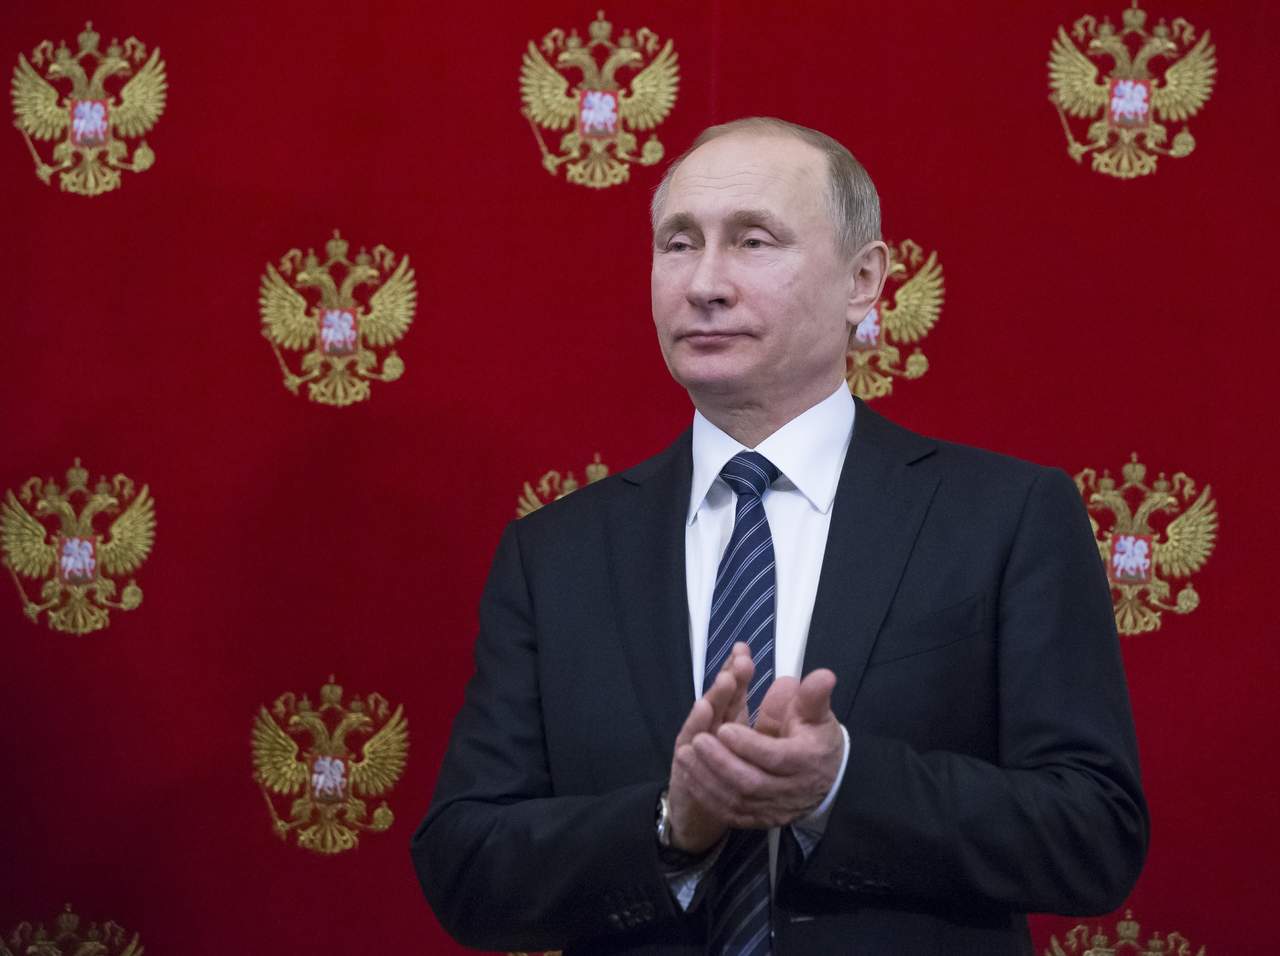 Putin dijo que Rusia da la bienvenida a las declaraciones de Trump sobre la necesidad de restablecer los lazos entre Estados Unidos y Rusia. (AP)